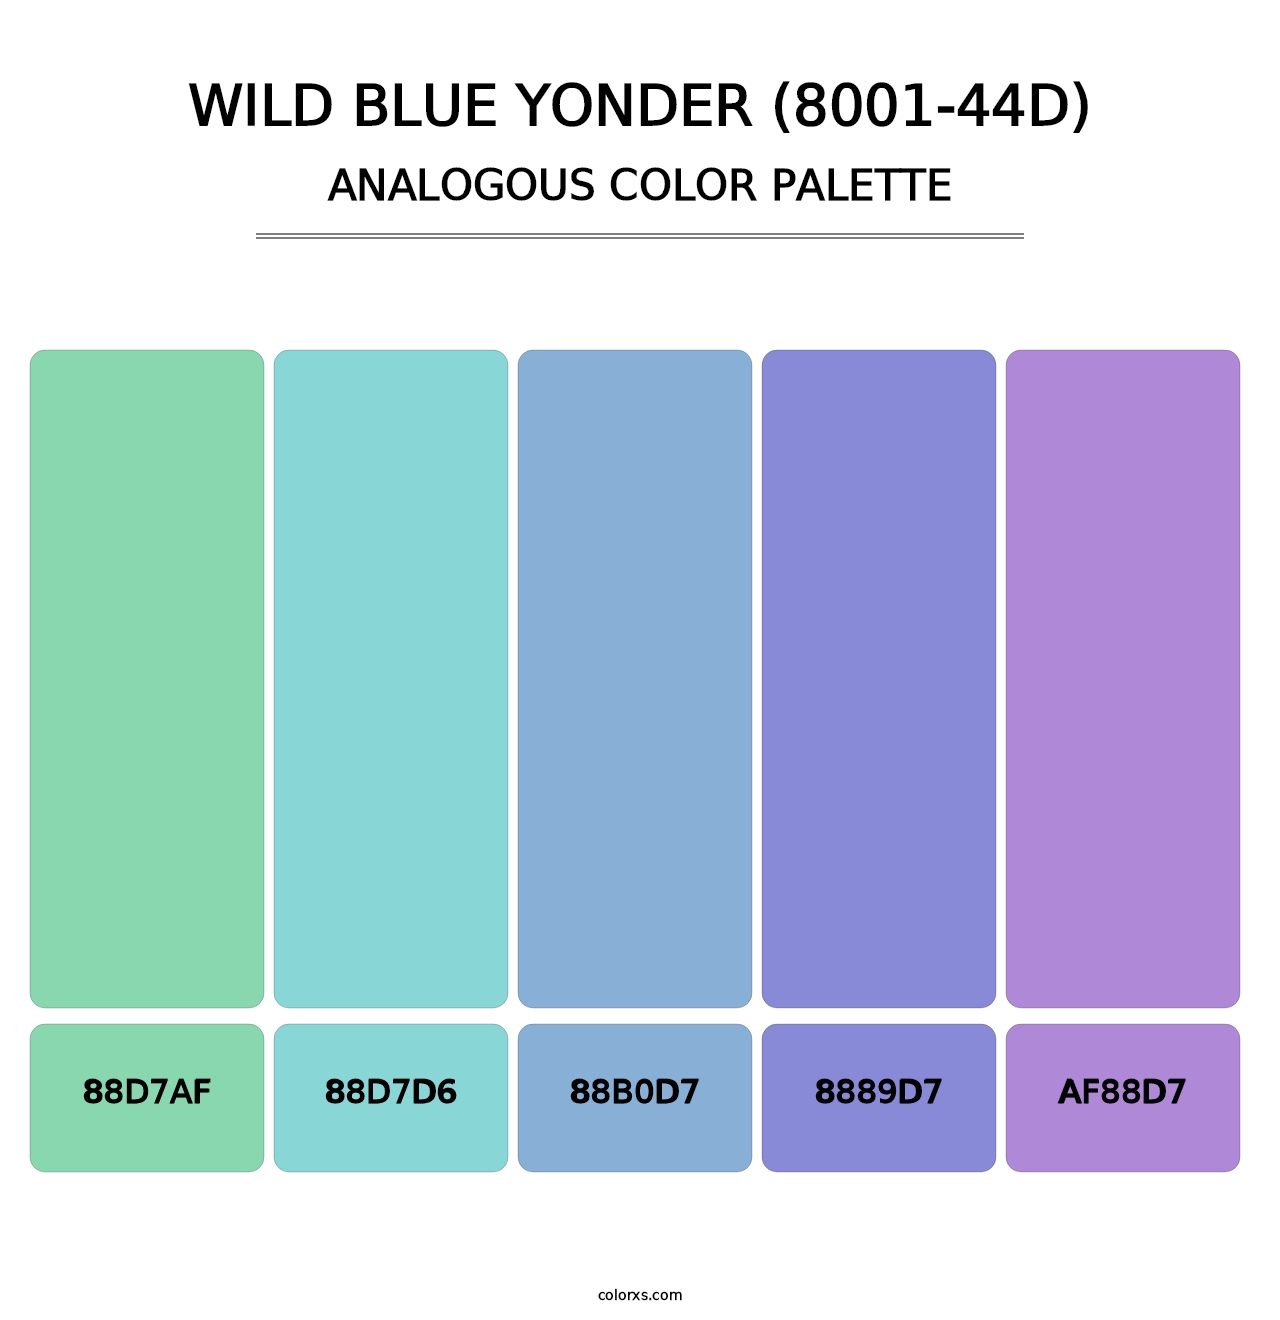 Wild Blue Yonder (8001-44D) - Analogous Color Palette